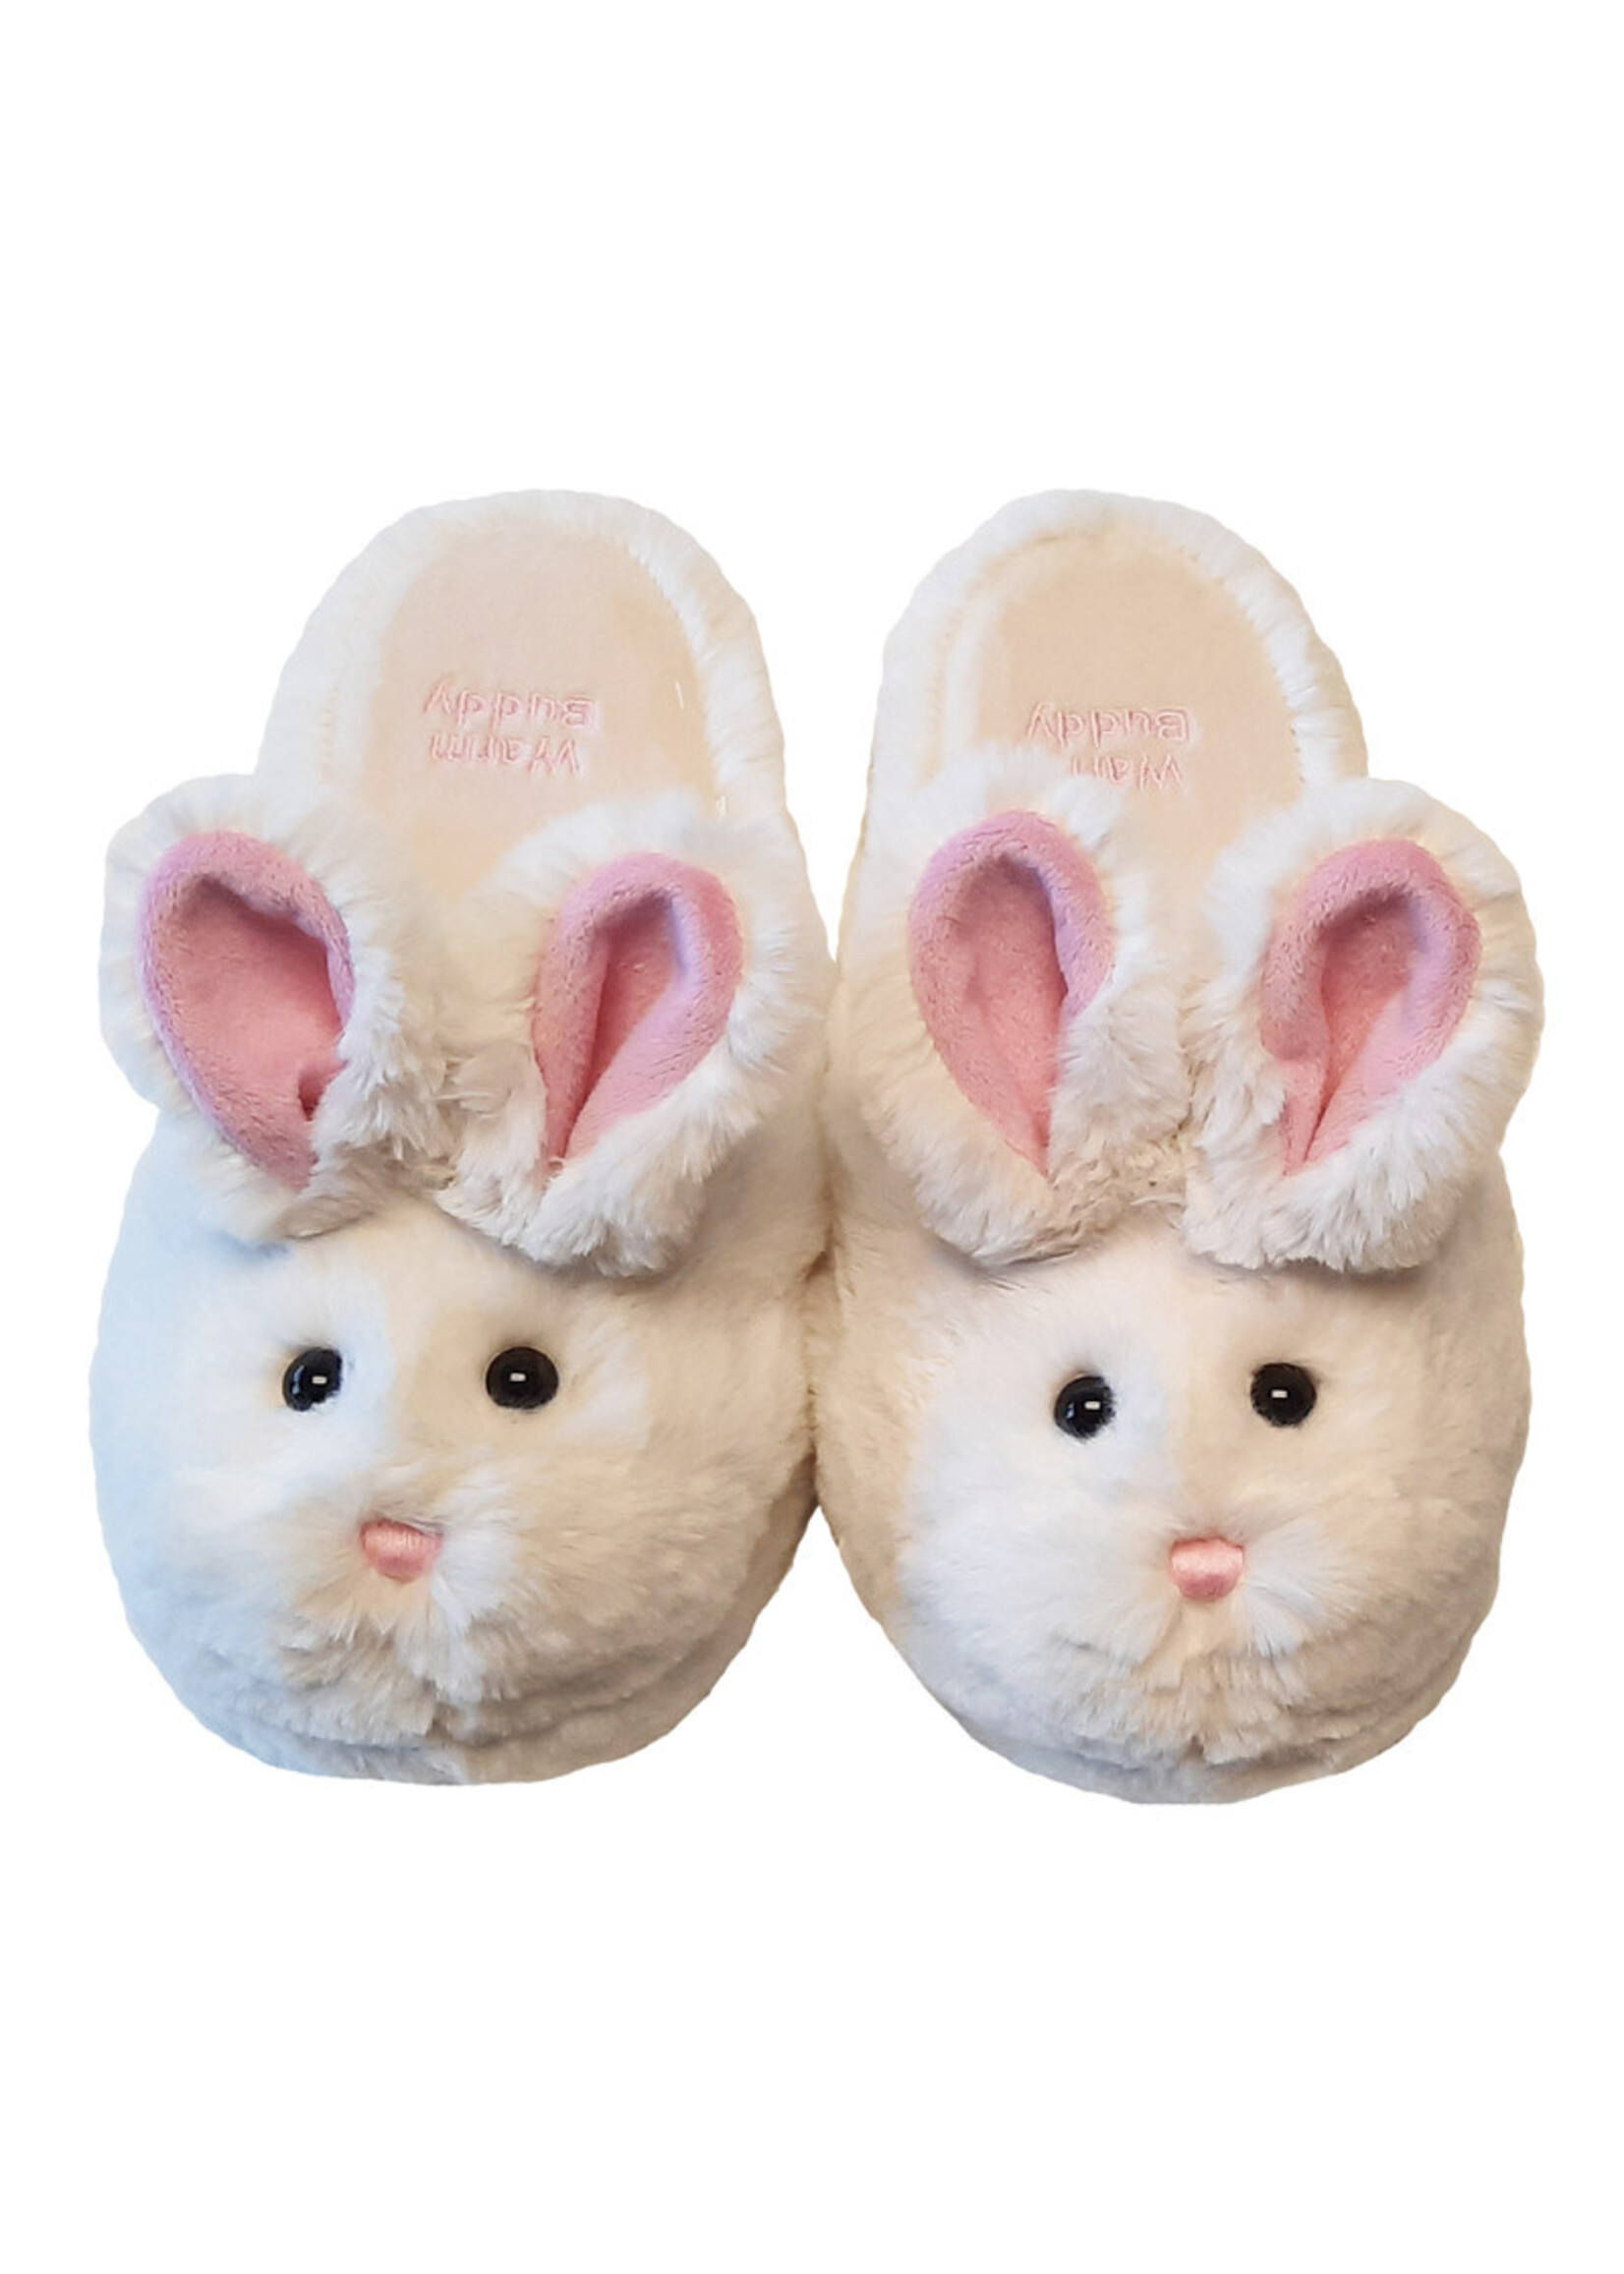 Warm Buddy Bunny Slippers - Large size Sz 9-10